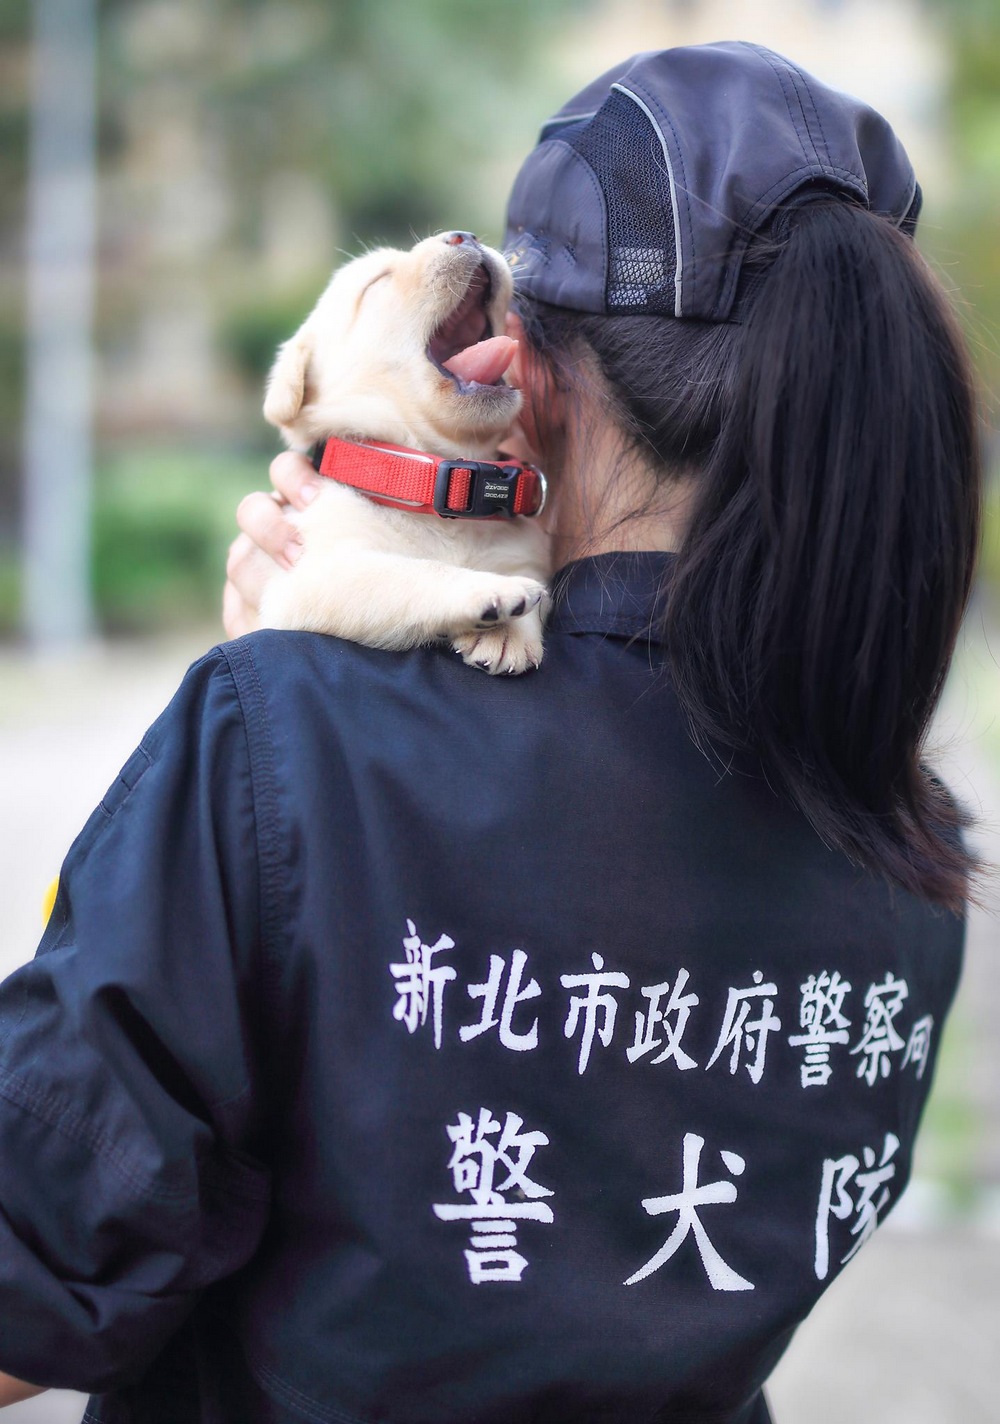 В полиции Тайваня появились новобранцы, обезоруживающие очарованием